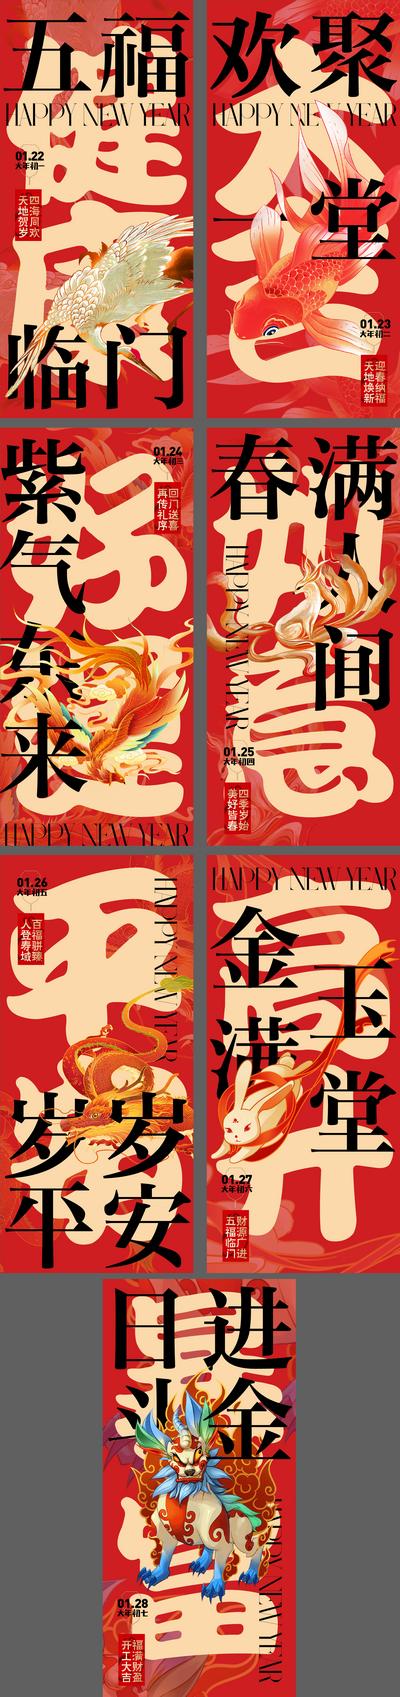 南门网 海报 中国传统节日 春节 过年 新年 红包 锦鲤 插画 系列